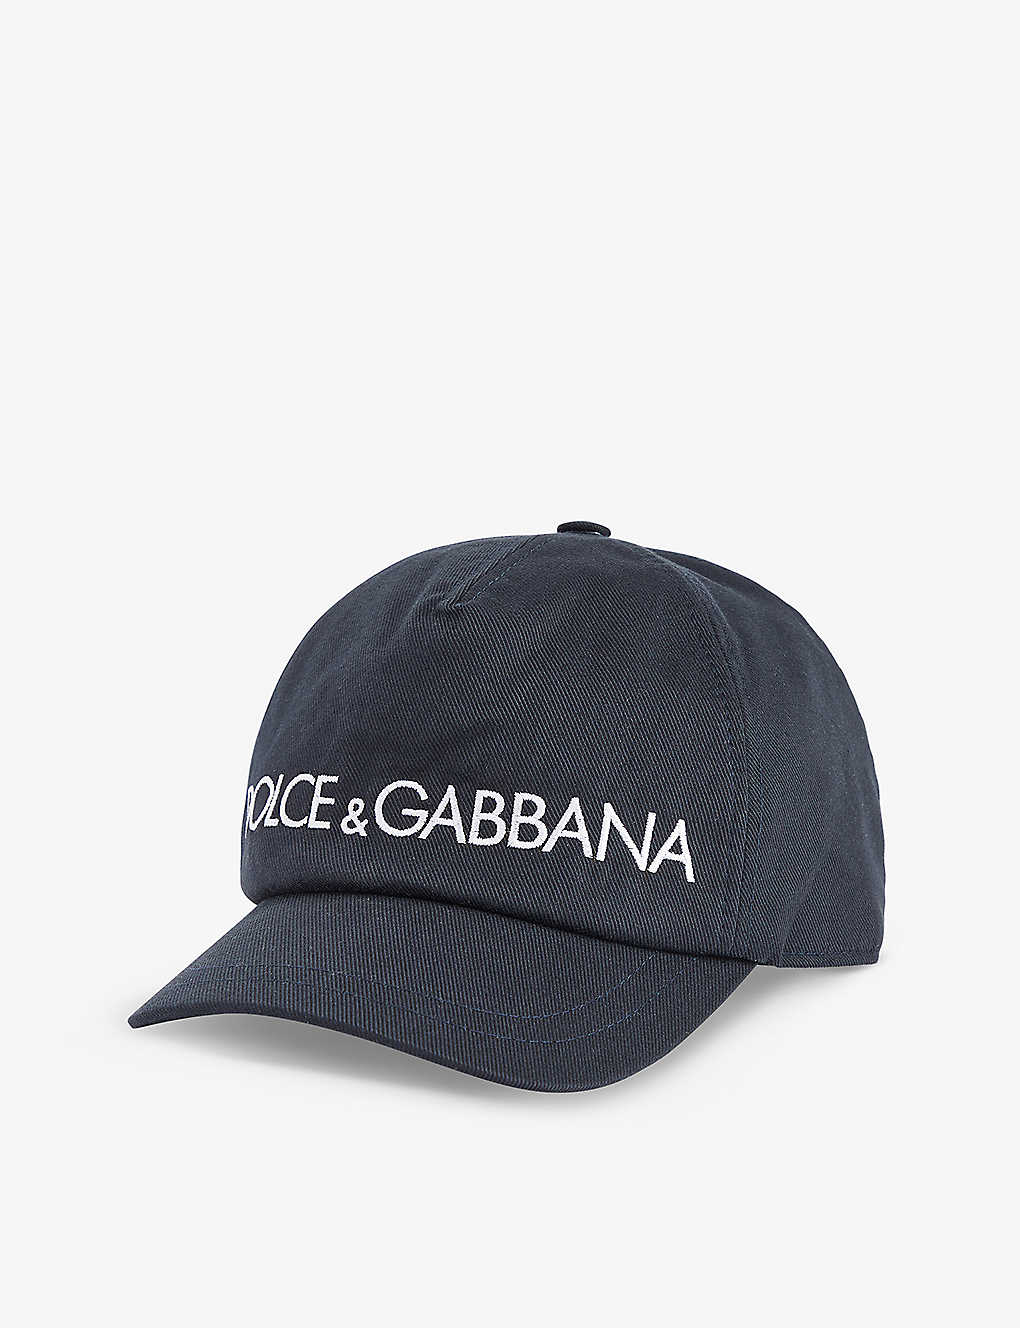 Dolce & Gabbana Kids' Brand-embroidered Cotton-twill Hat In Very Dark Blue 1